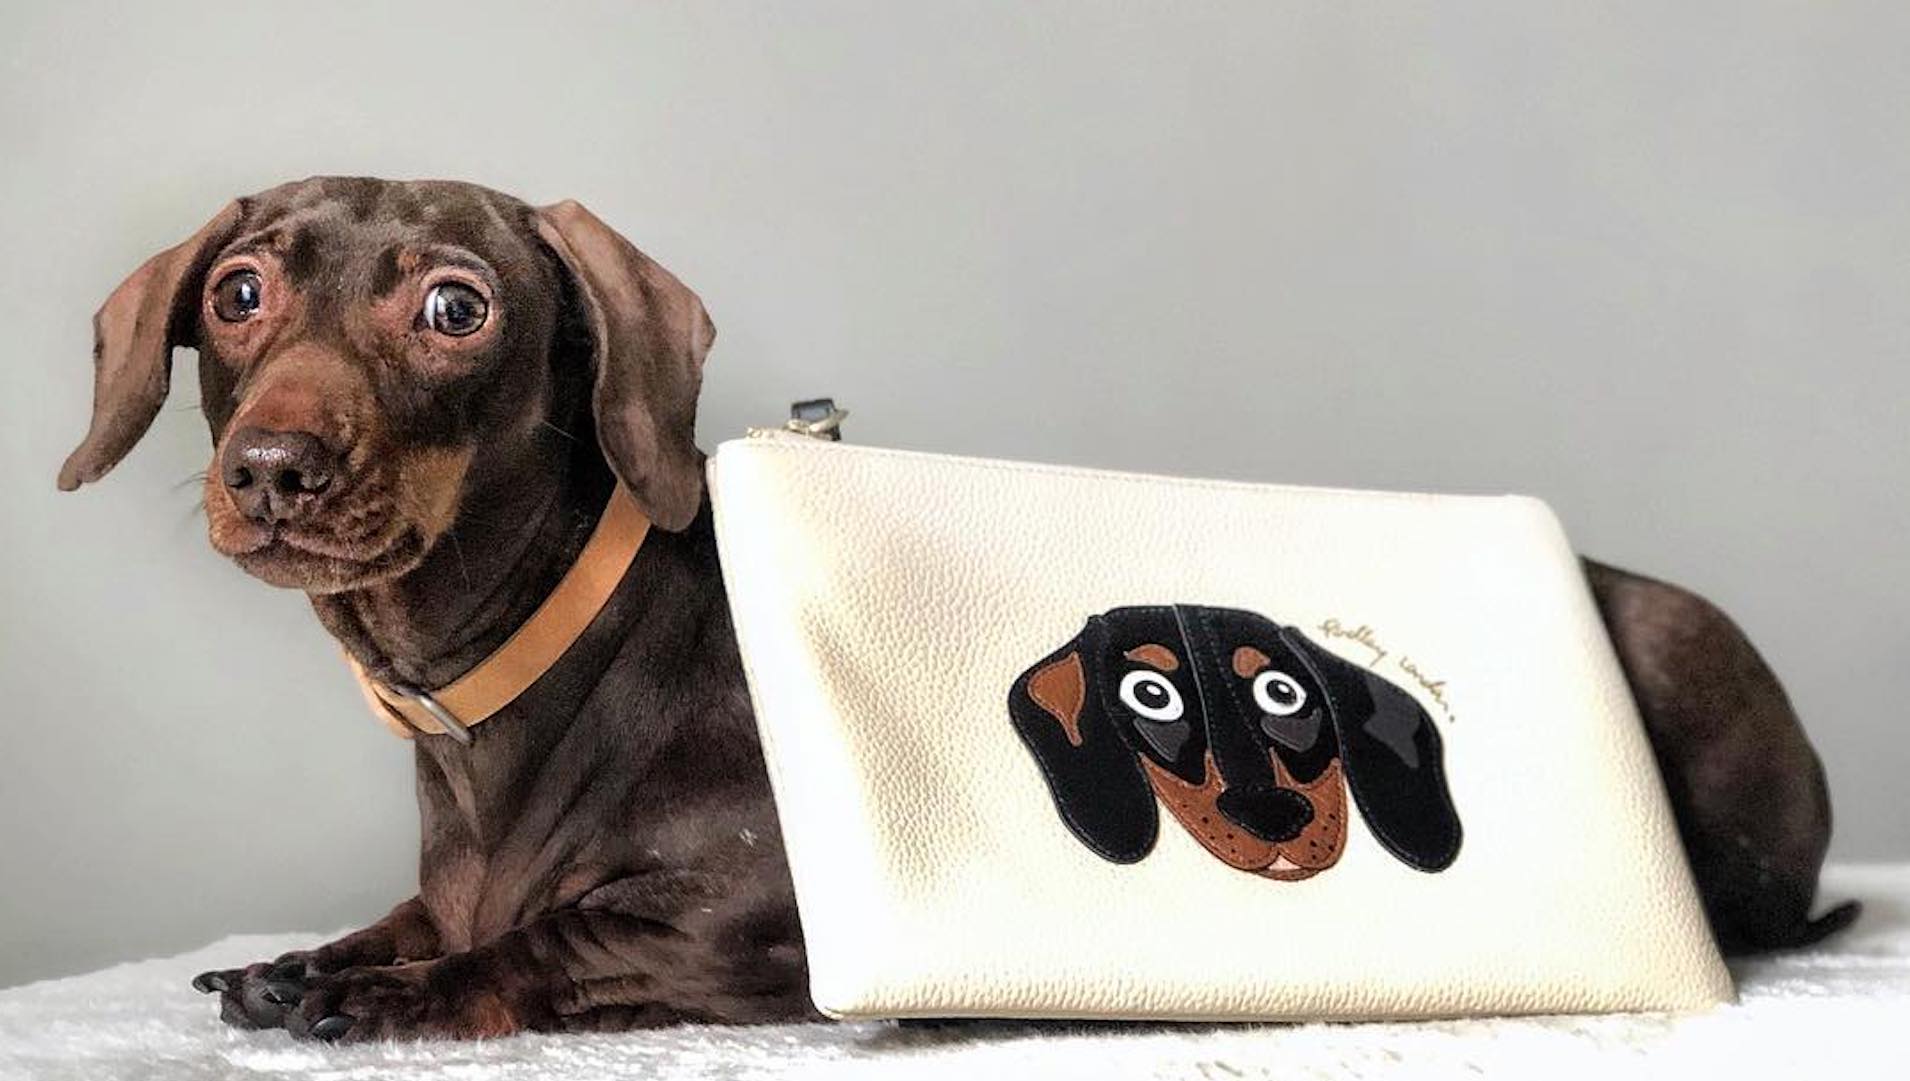 Pops modelling a dachshund purse